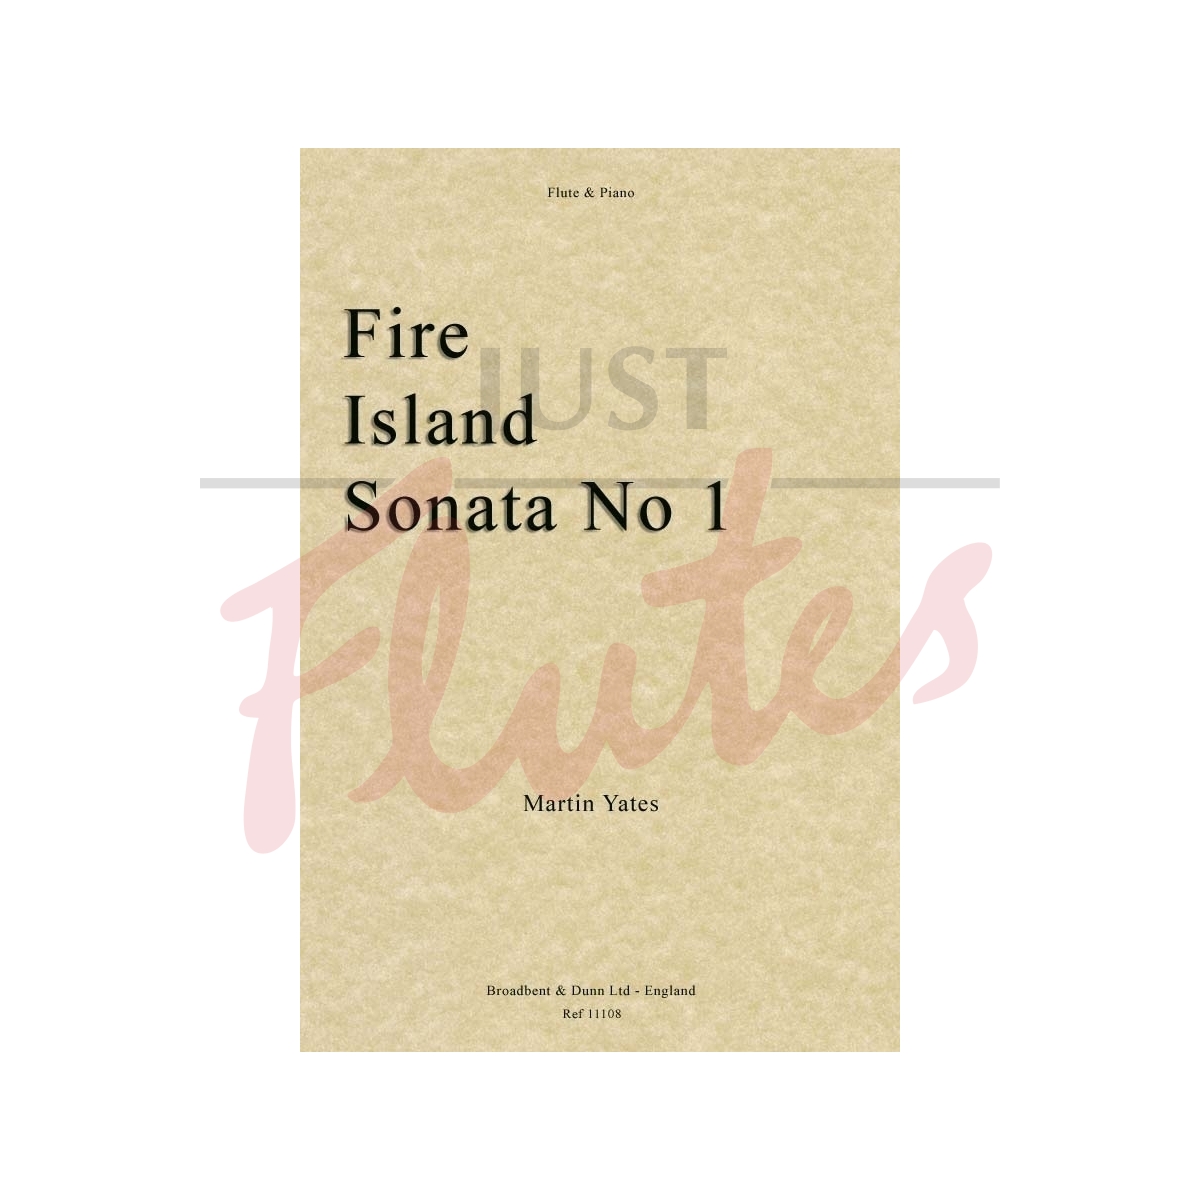 Fire Island Sonata No 1